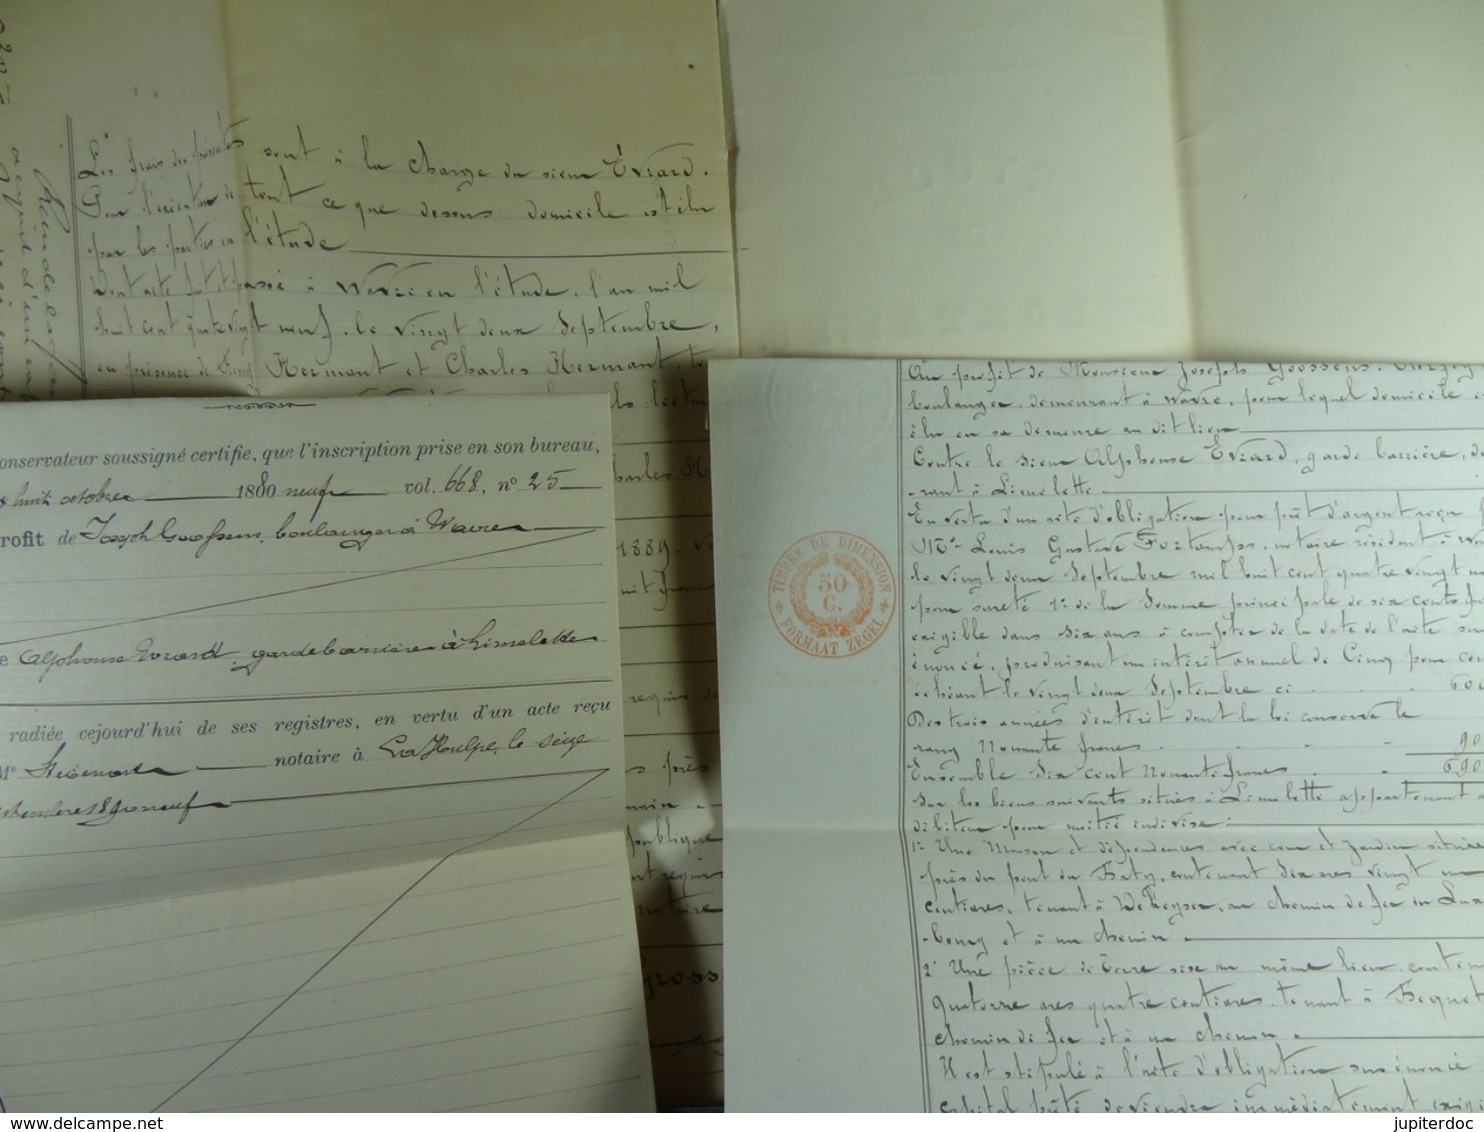 Acte Notarié 1889 Obligation Par Evrard De Limelette à Goossens-Clerfayt De Wavre /05/ - Manuscripts